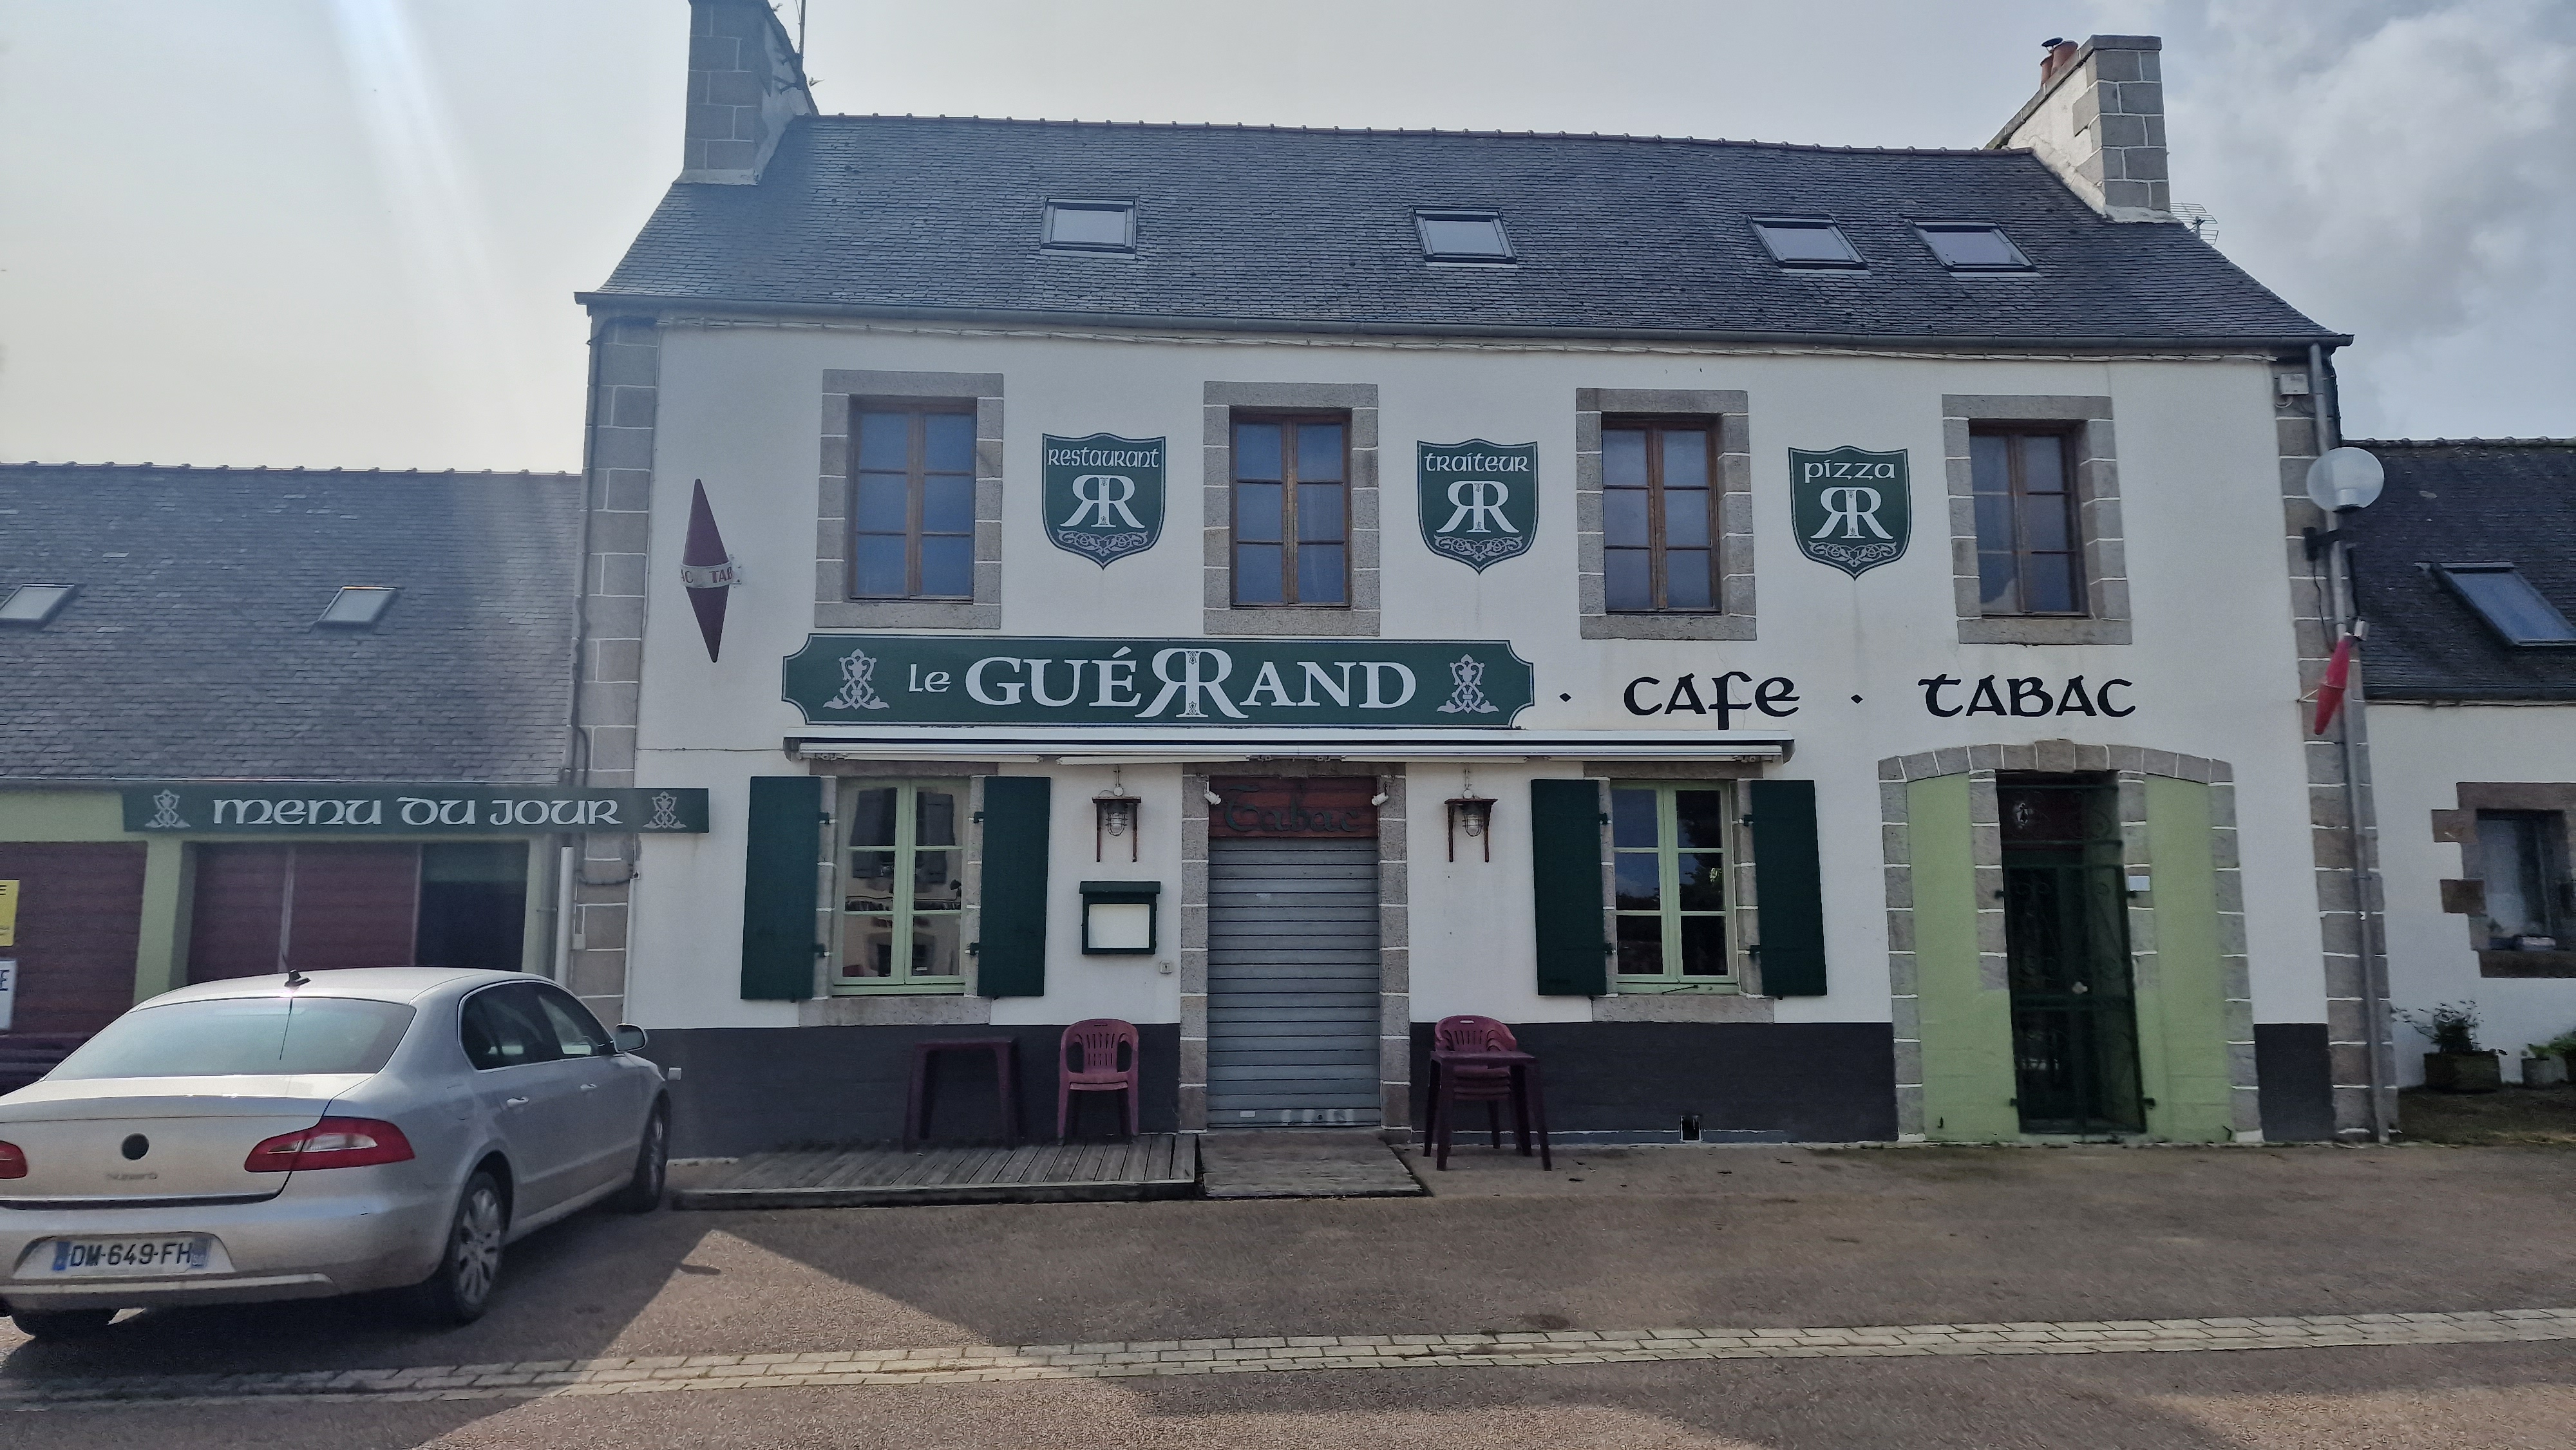 Bar - Restaurant Le guérrand